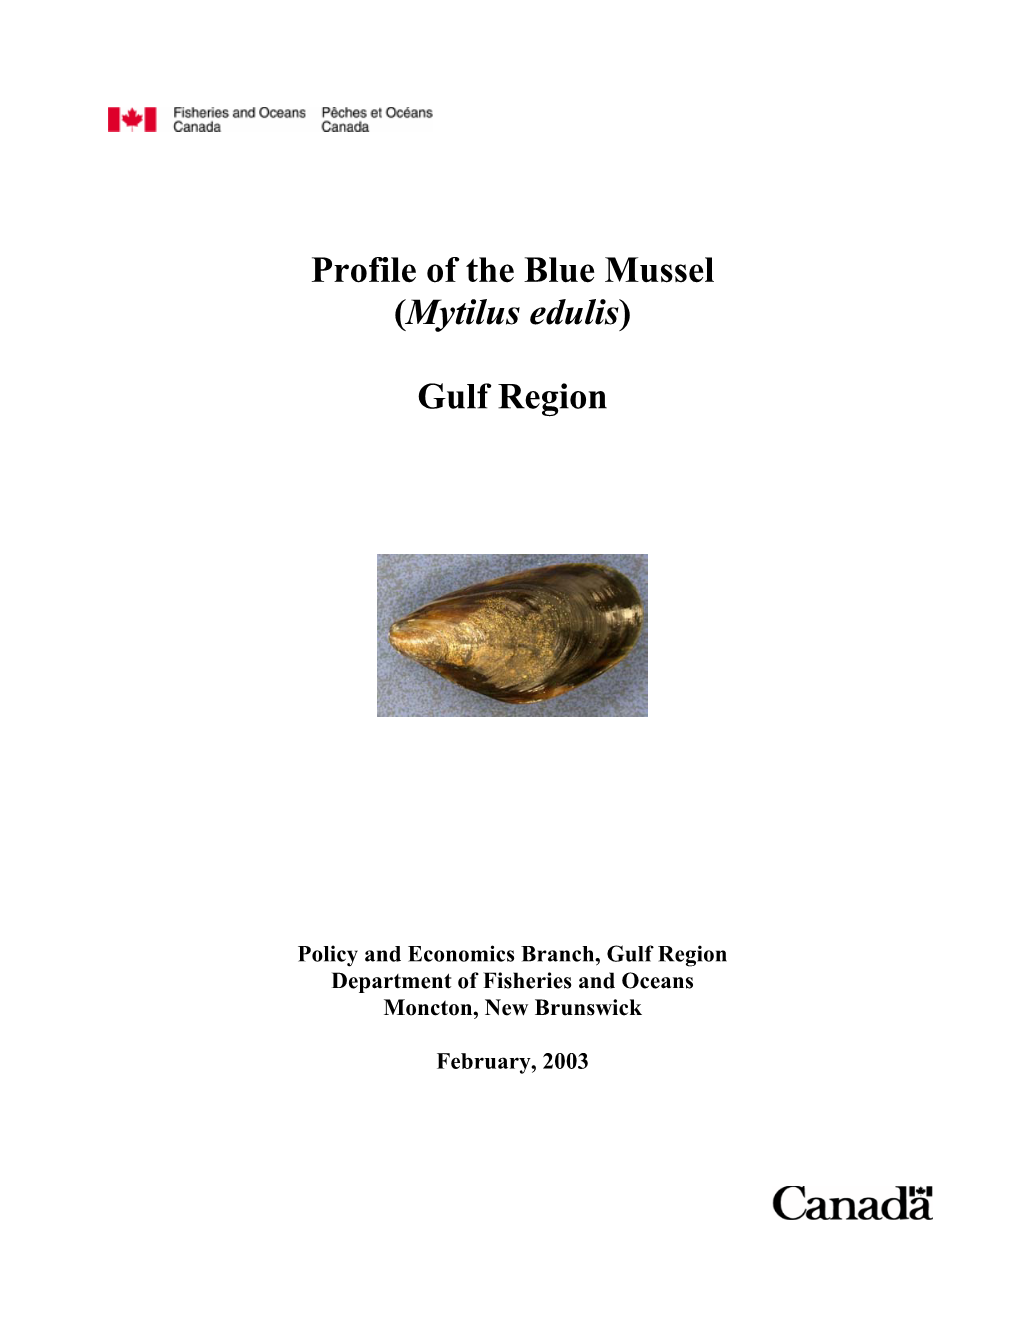 Profile of the Blue Mussel (Mytilus Edulis)